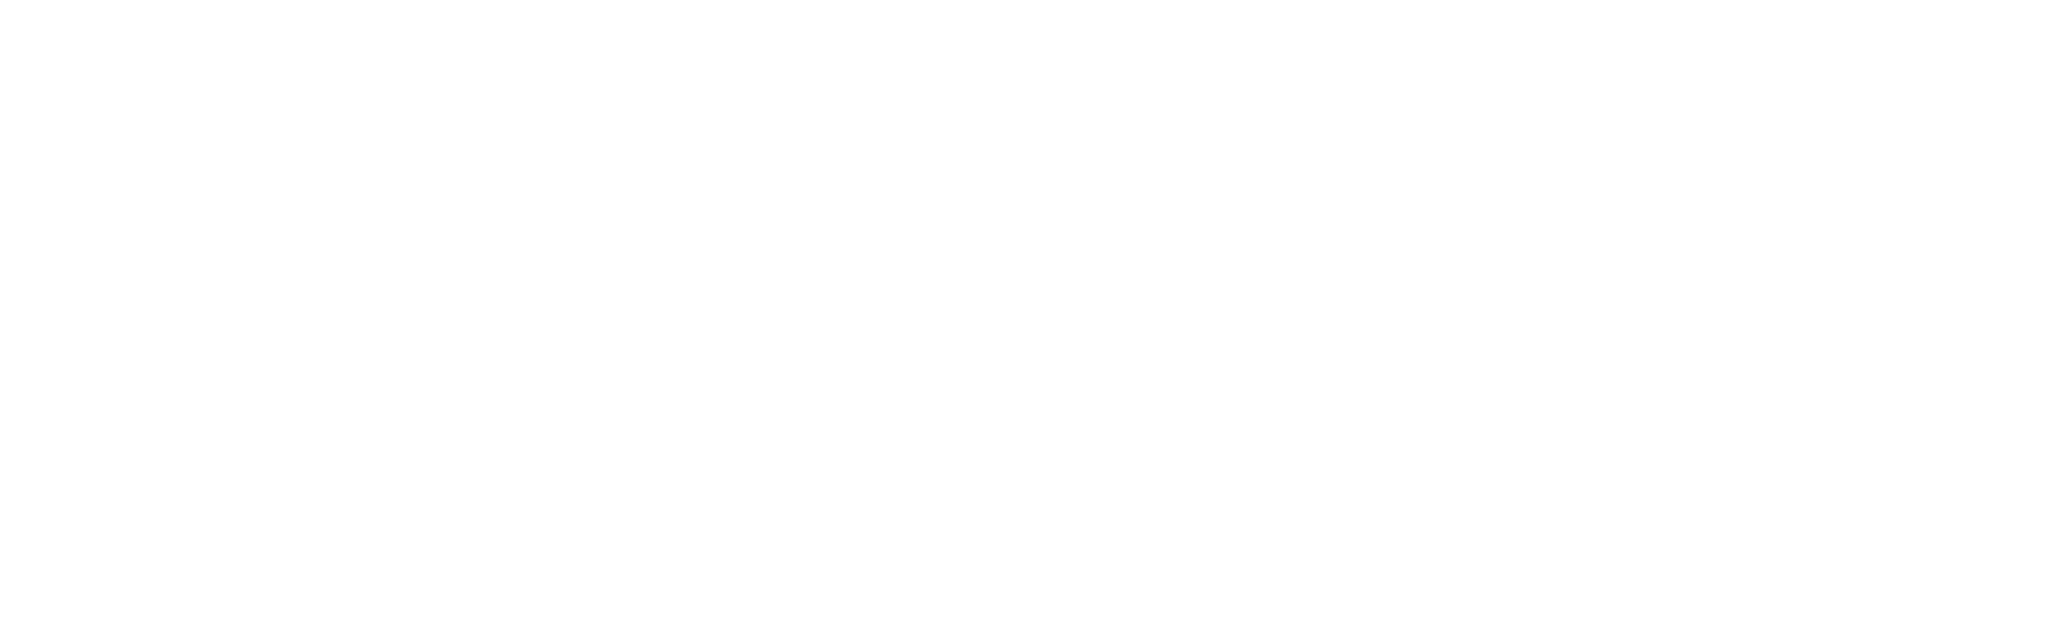 Moto Mecánica Innovación Argentina